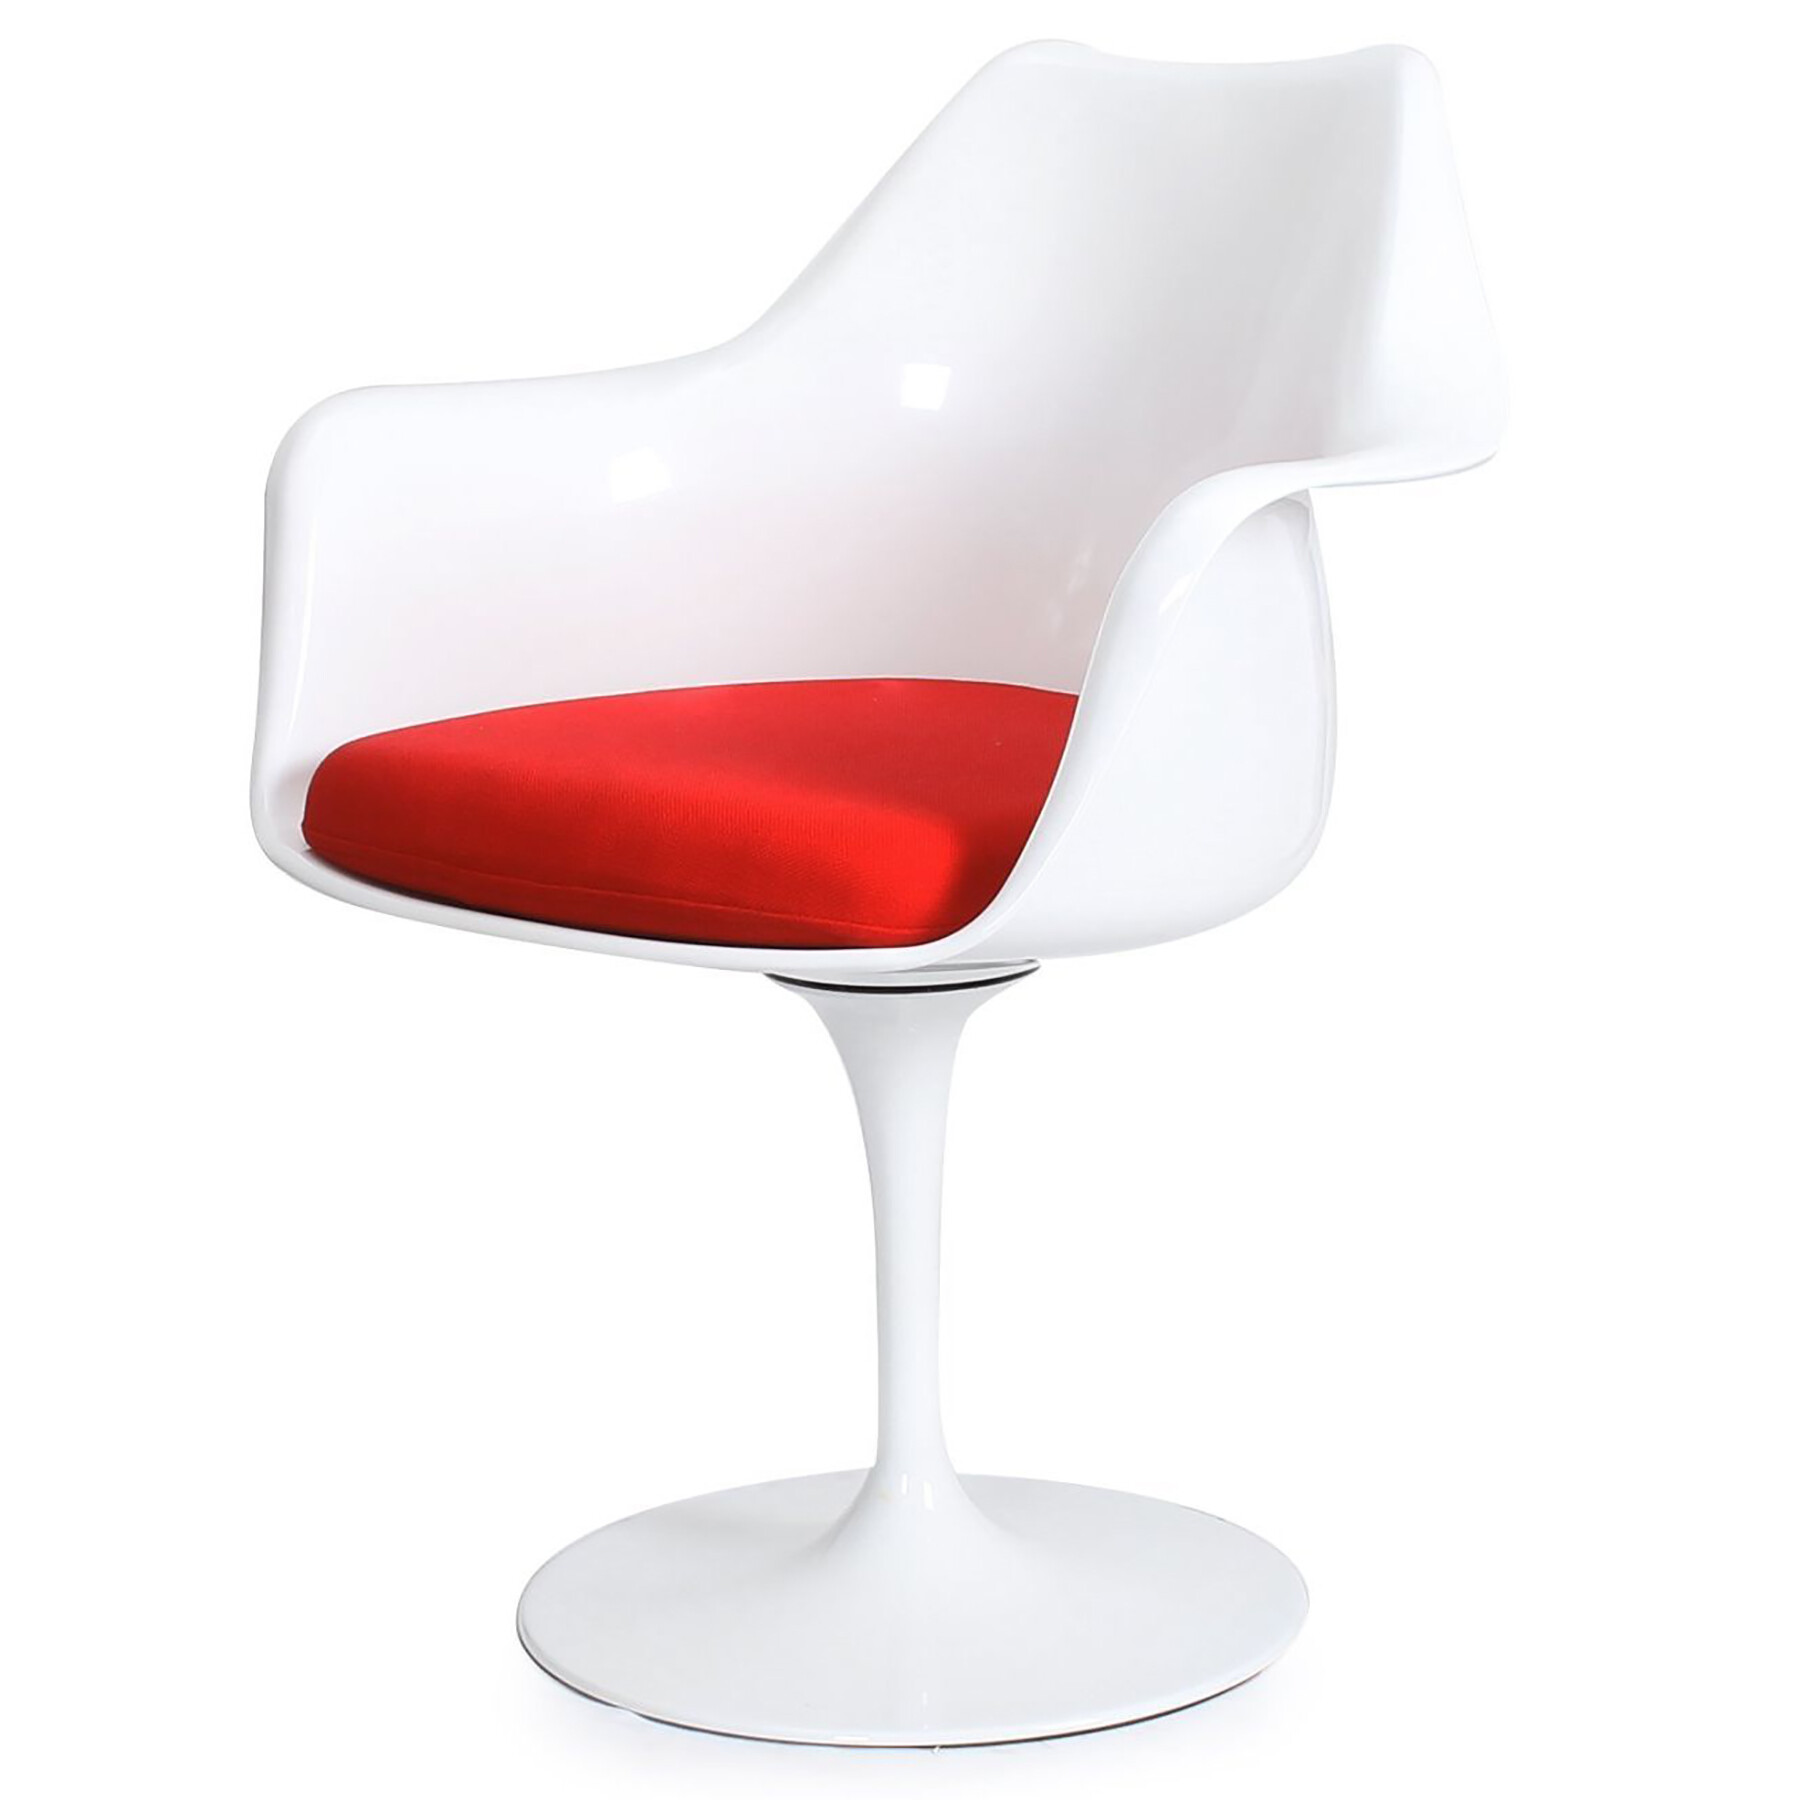 Стул с подлокотниками пластиковый белый с красной подушкой Eero Saarinen Style Tulip Armchair